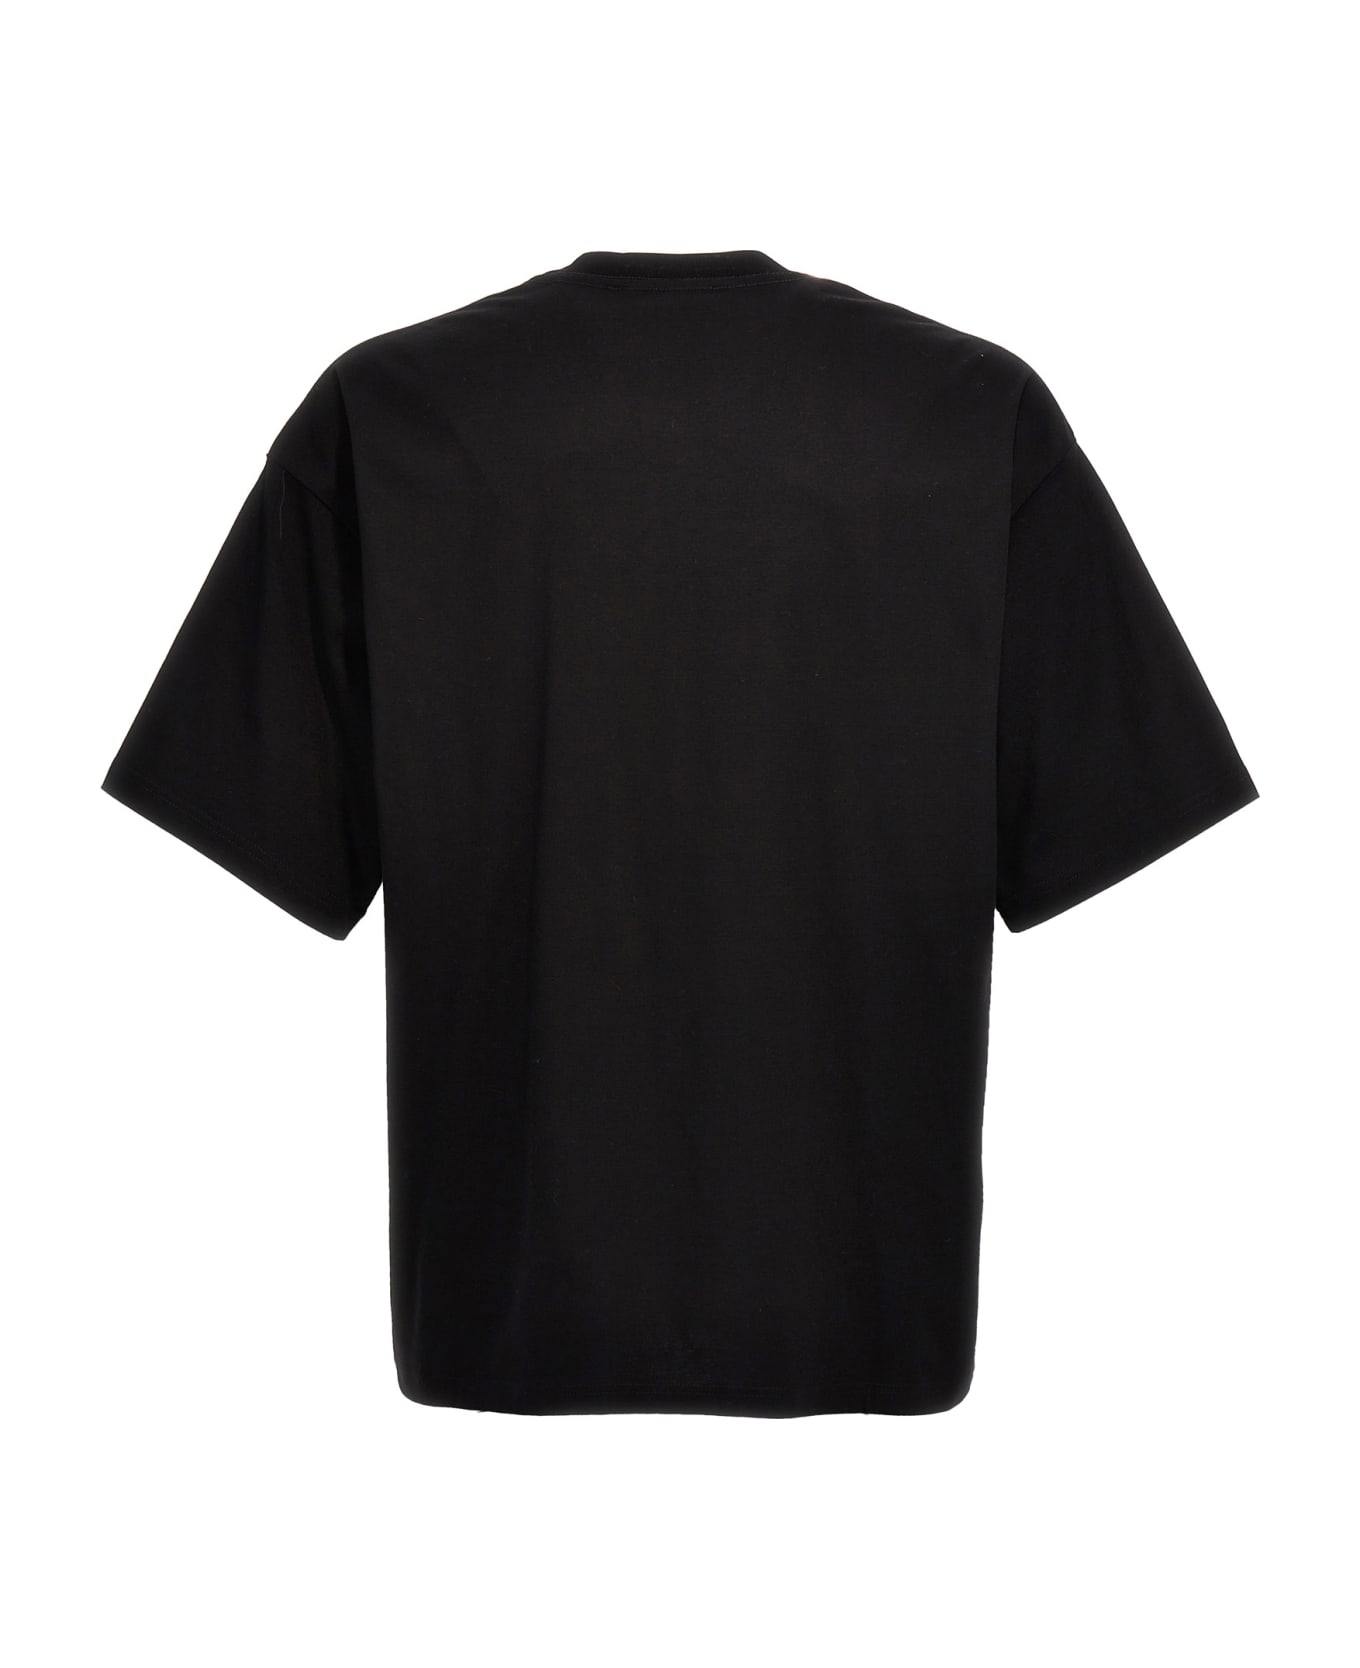 Lanvin 'curb Lace' T-shirt - Black   シャツ